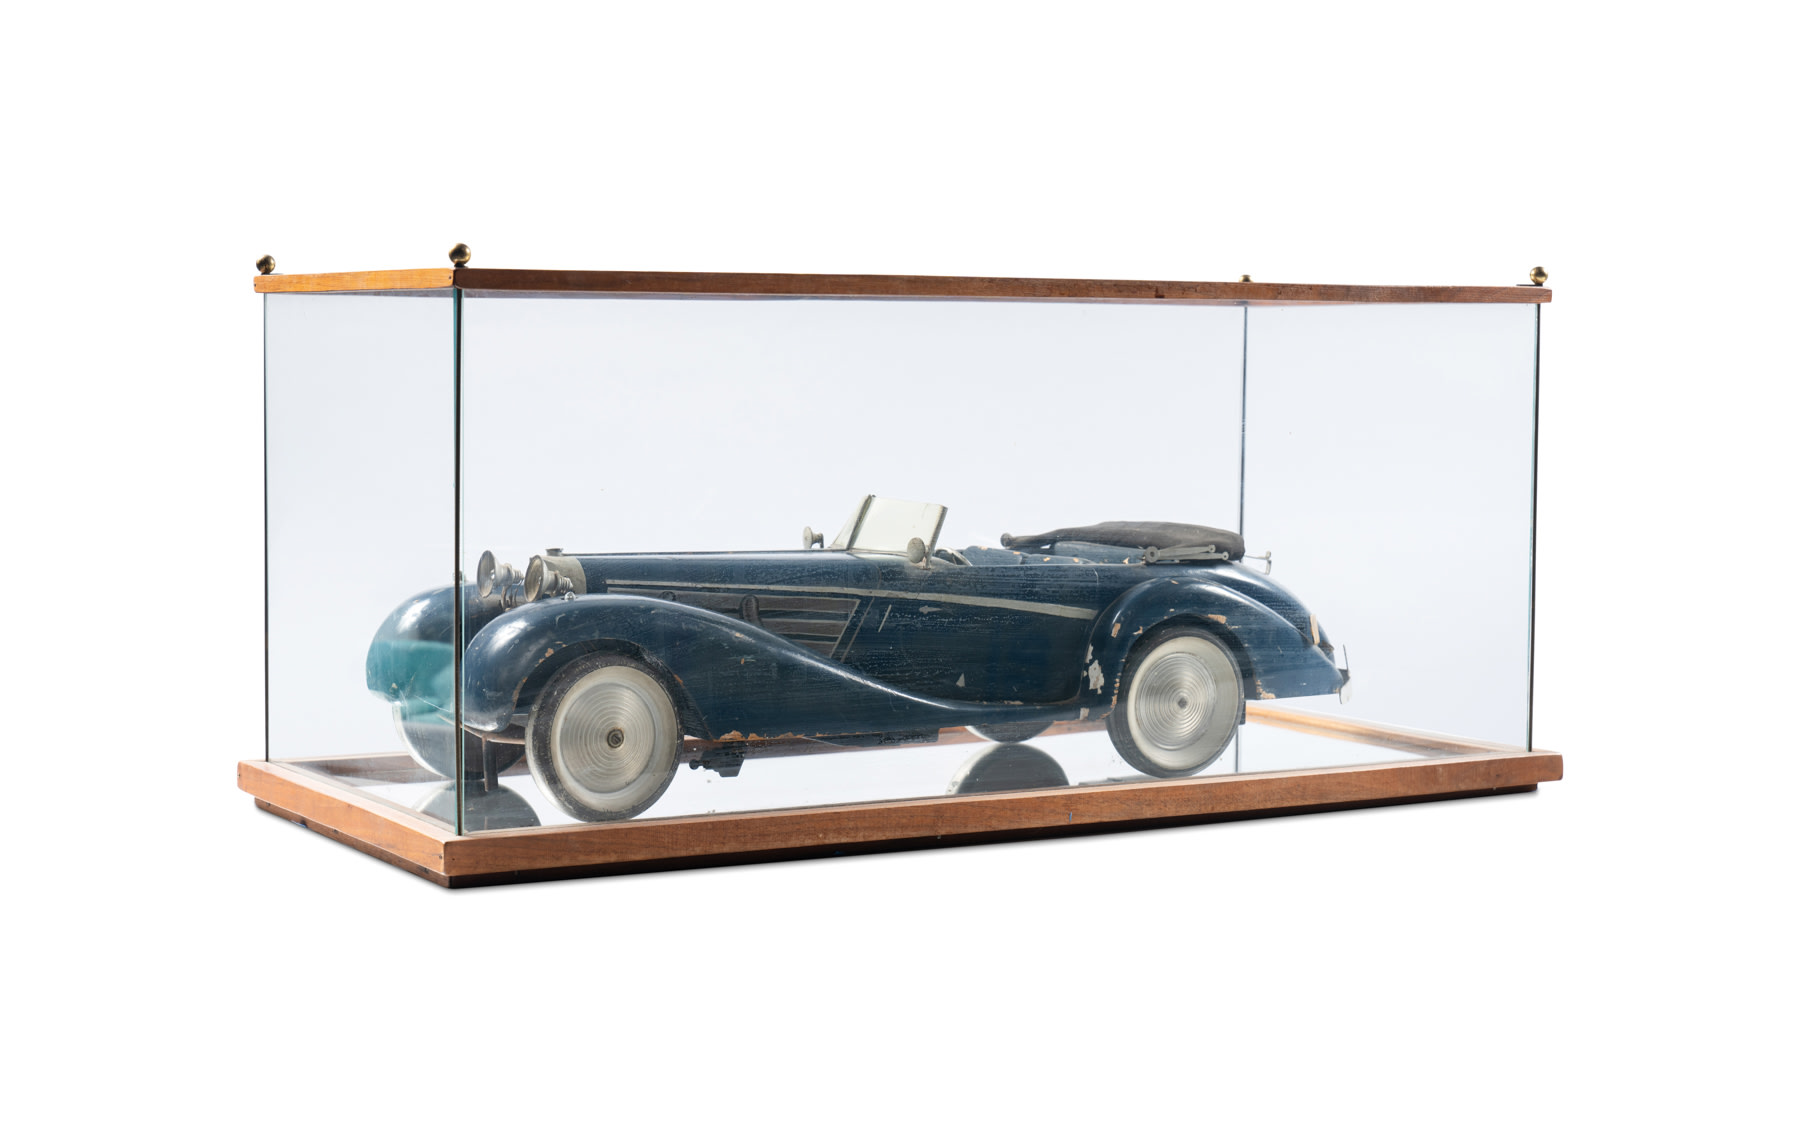 1:8 Scale Model of Prewar Car